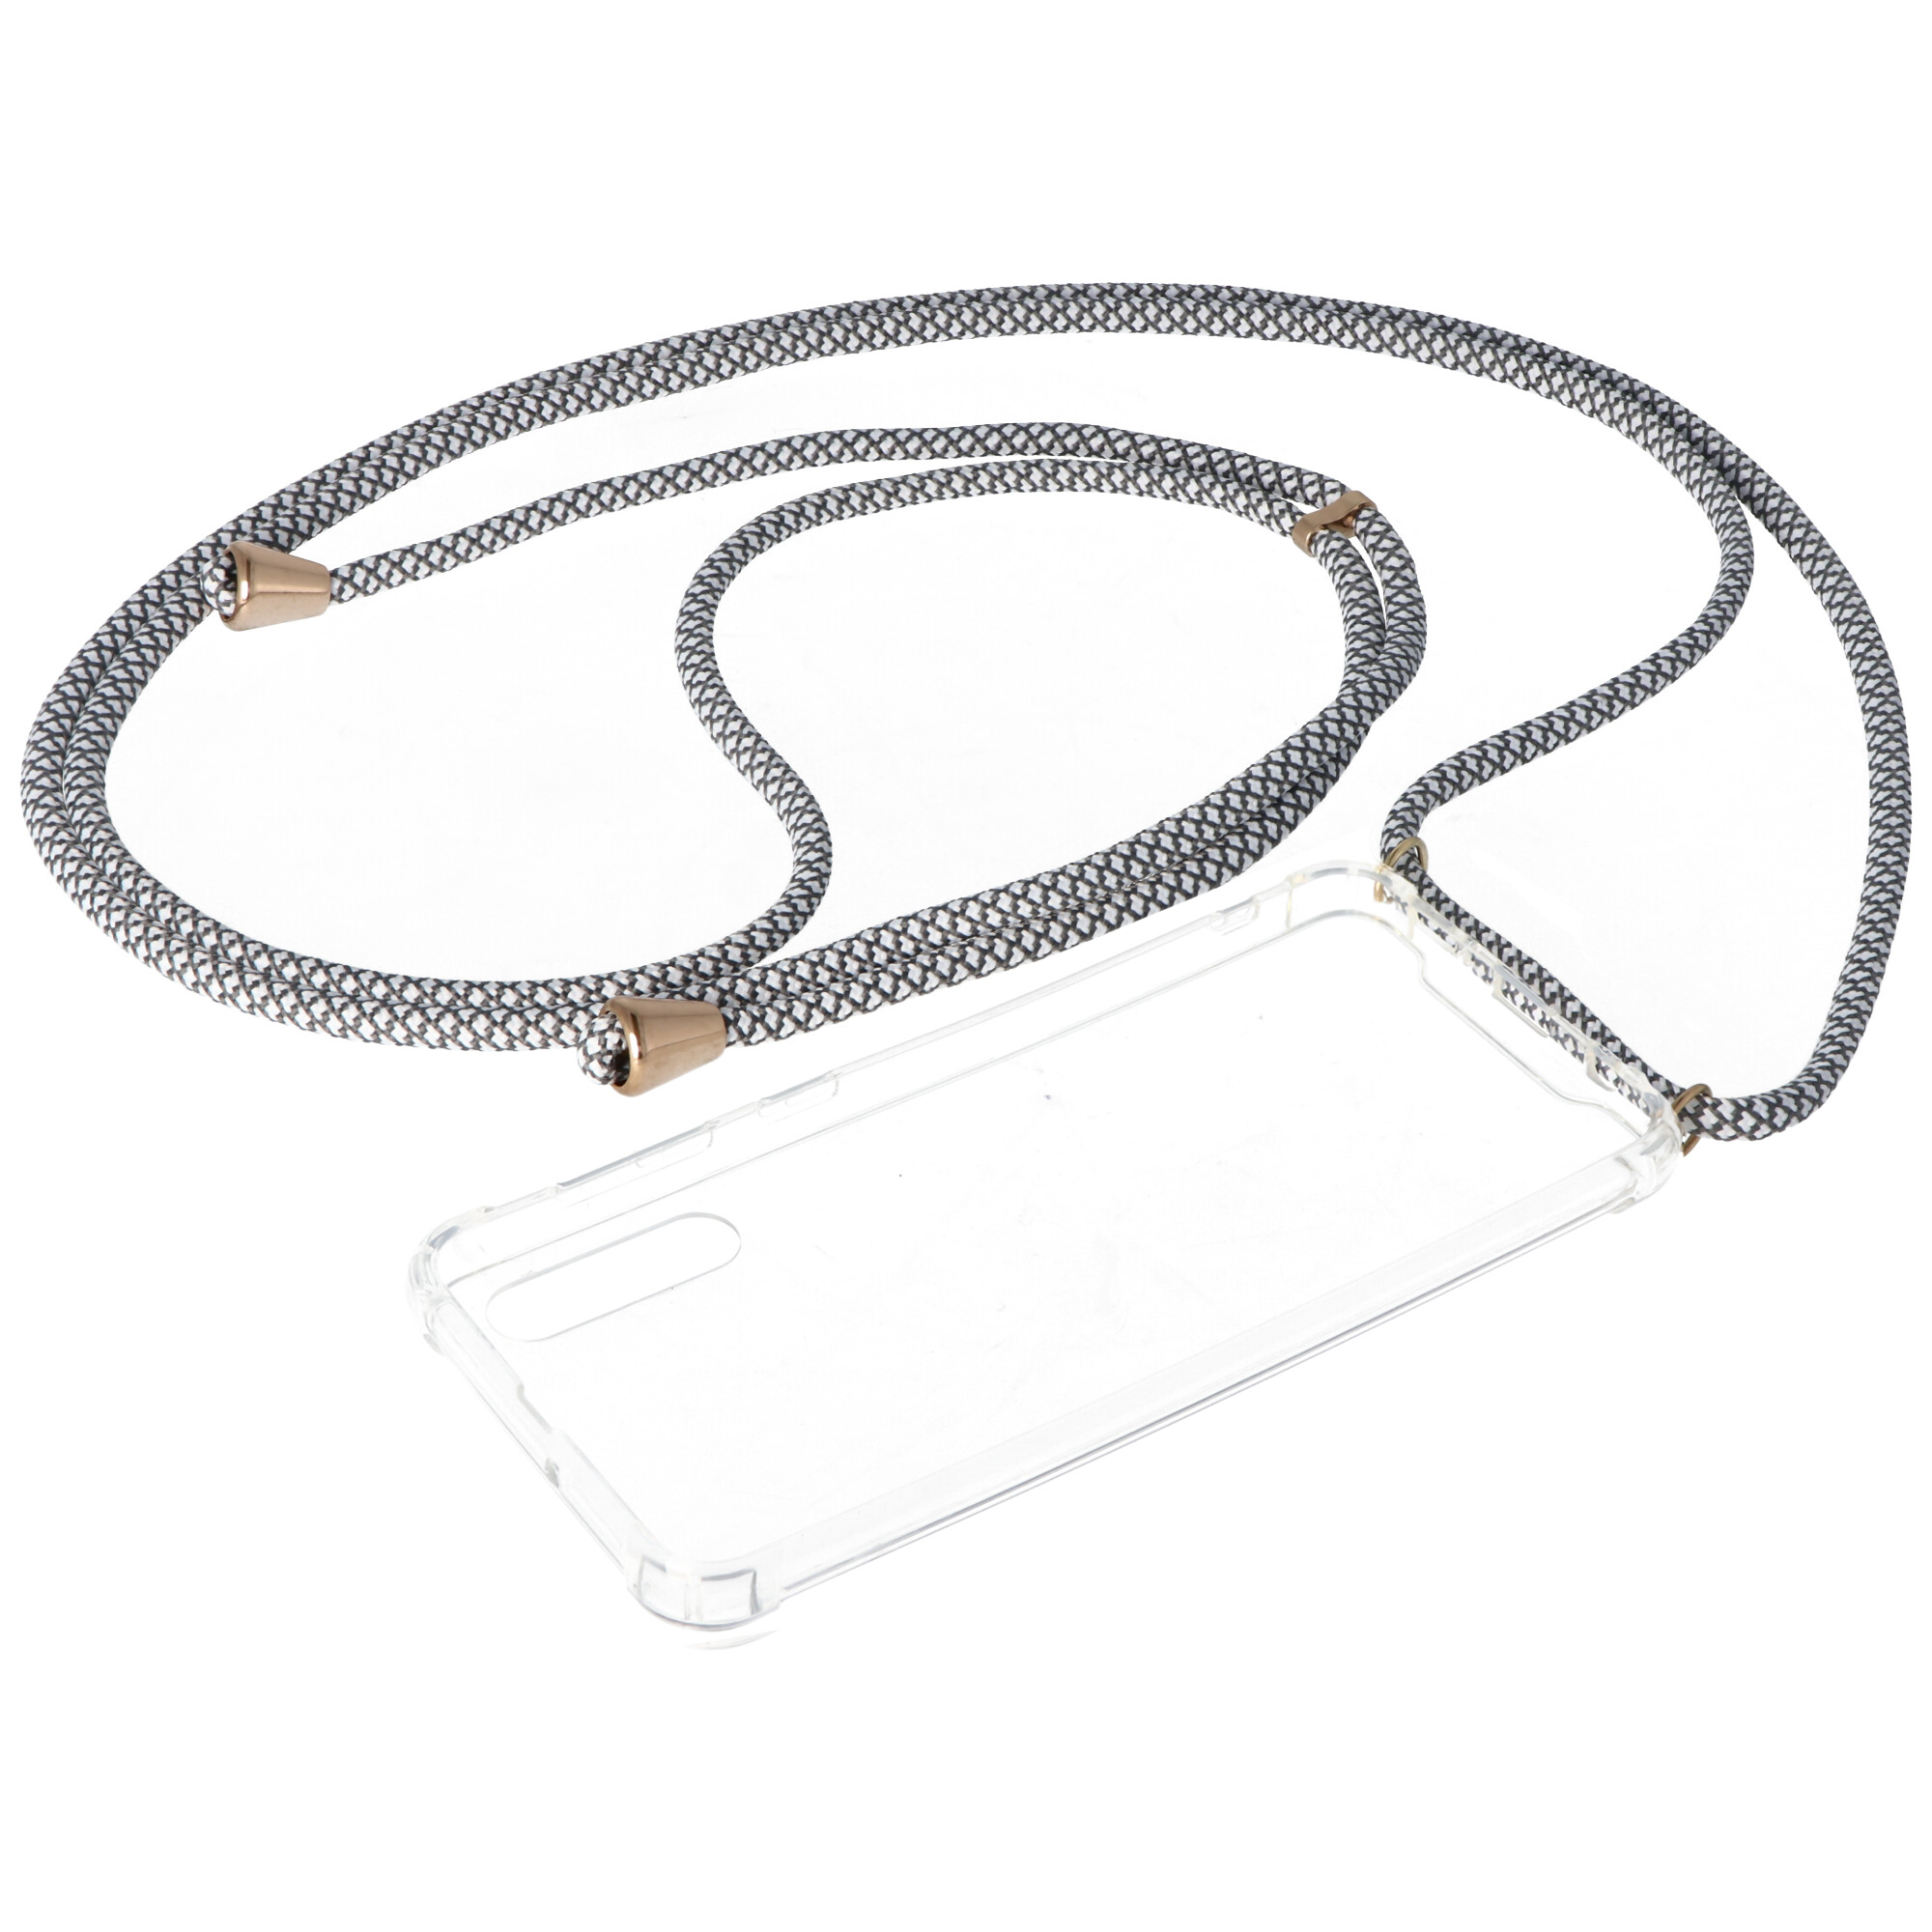 Necklace Case passend für Samsung Galaxy A50, Smartphonehülle mit Kordel grau,weiß zum Umhängen